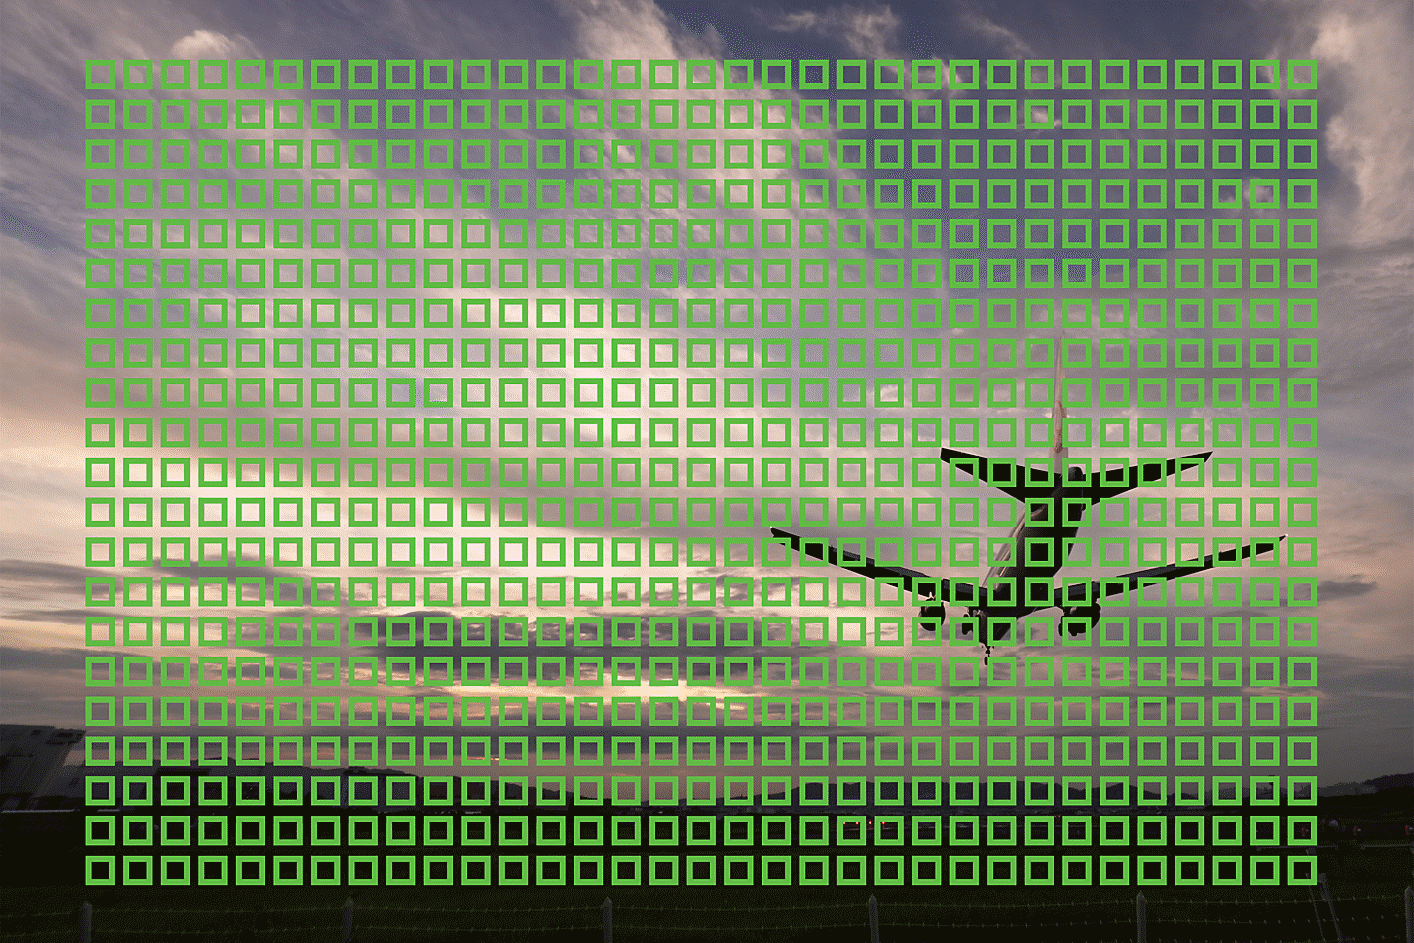 صورة مثال لطائرة تحلق مع مربعات صغيرة تُظهر 693 نقطة ضبط بؤري تلقائي عبر الصورة